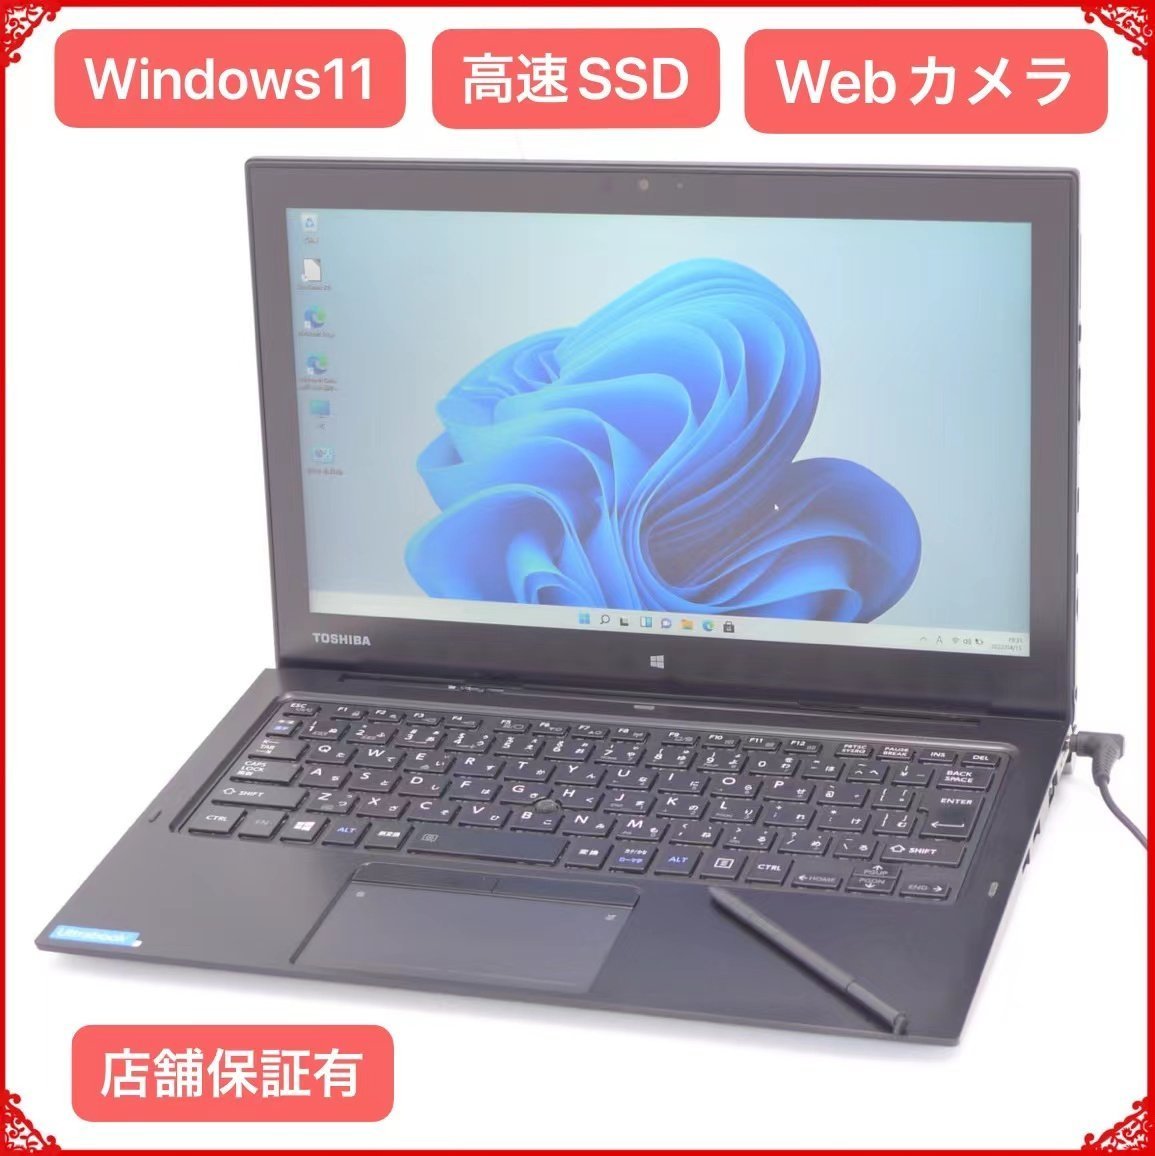 売り尽くしセール 最新Windows11 中古良品 高速SSD搭載 タブレット ノートPC 東芝 Toshiba Z20t-C 8GB WIFI Bluetooth カメラ Office